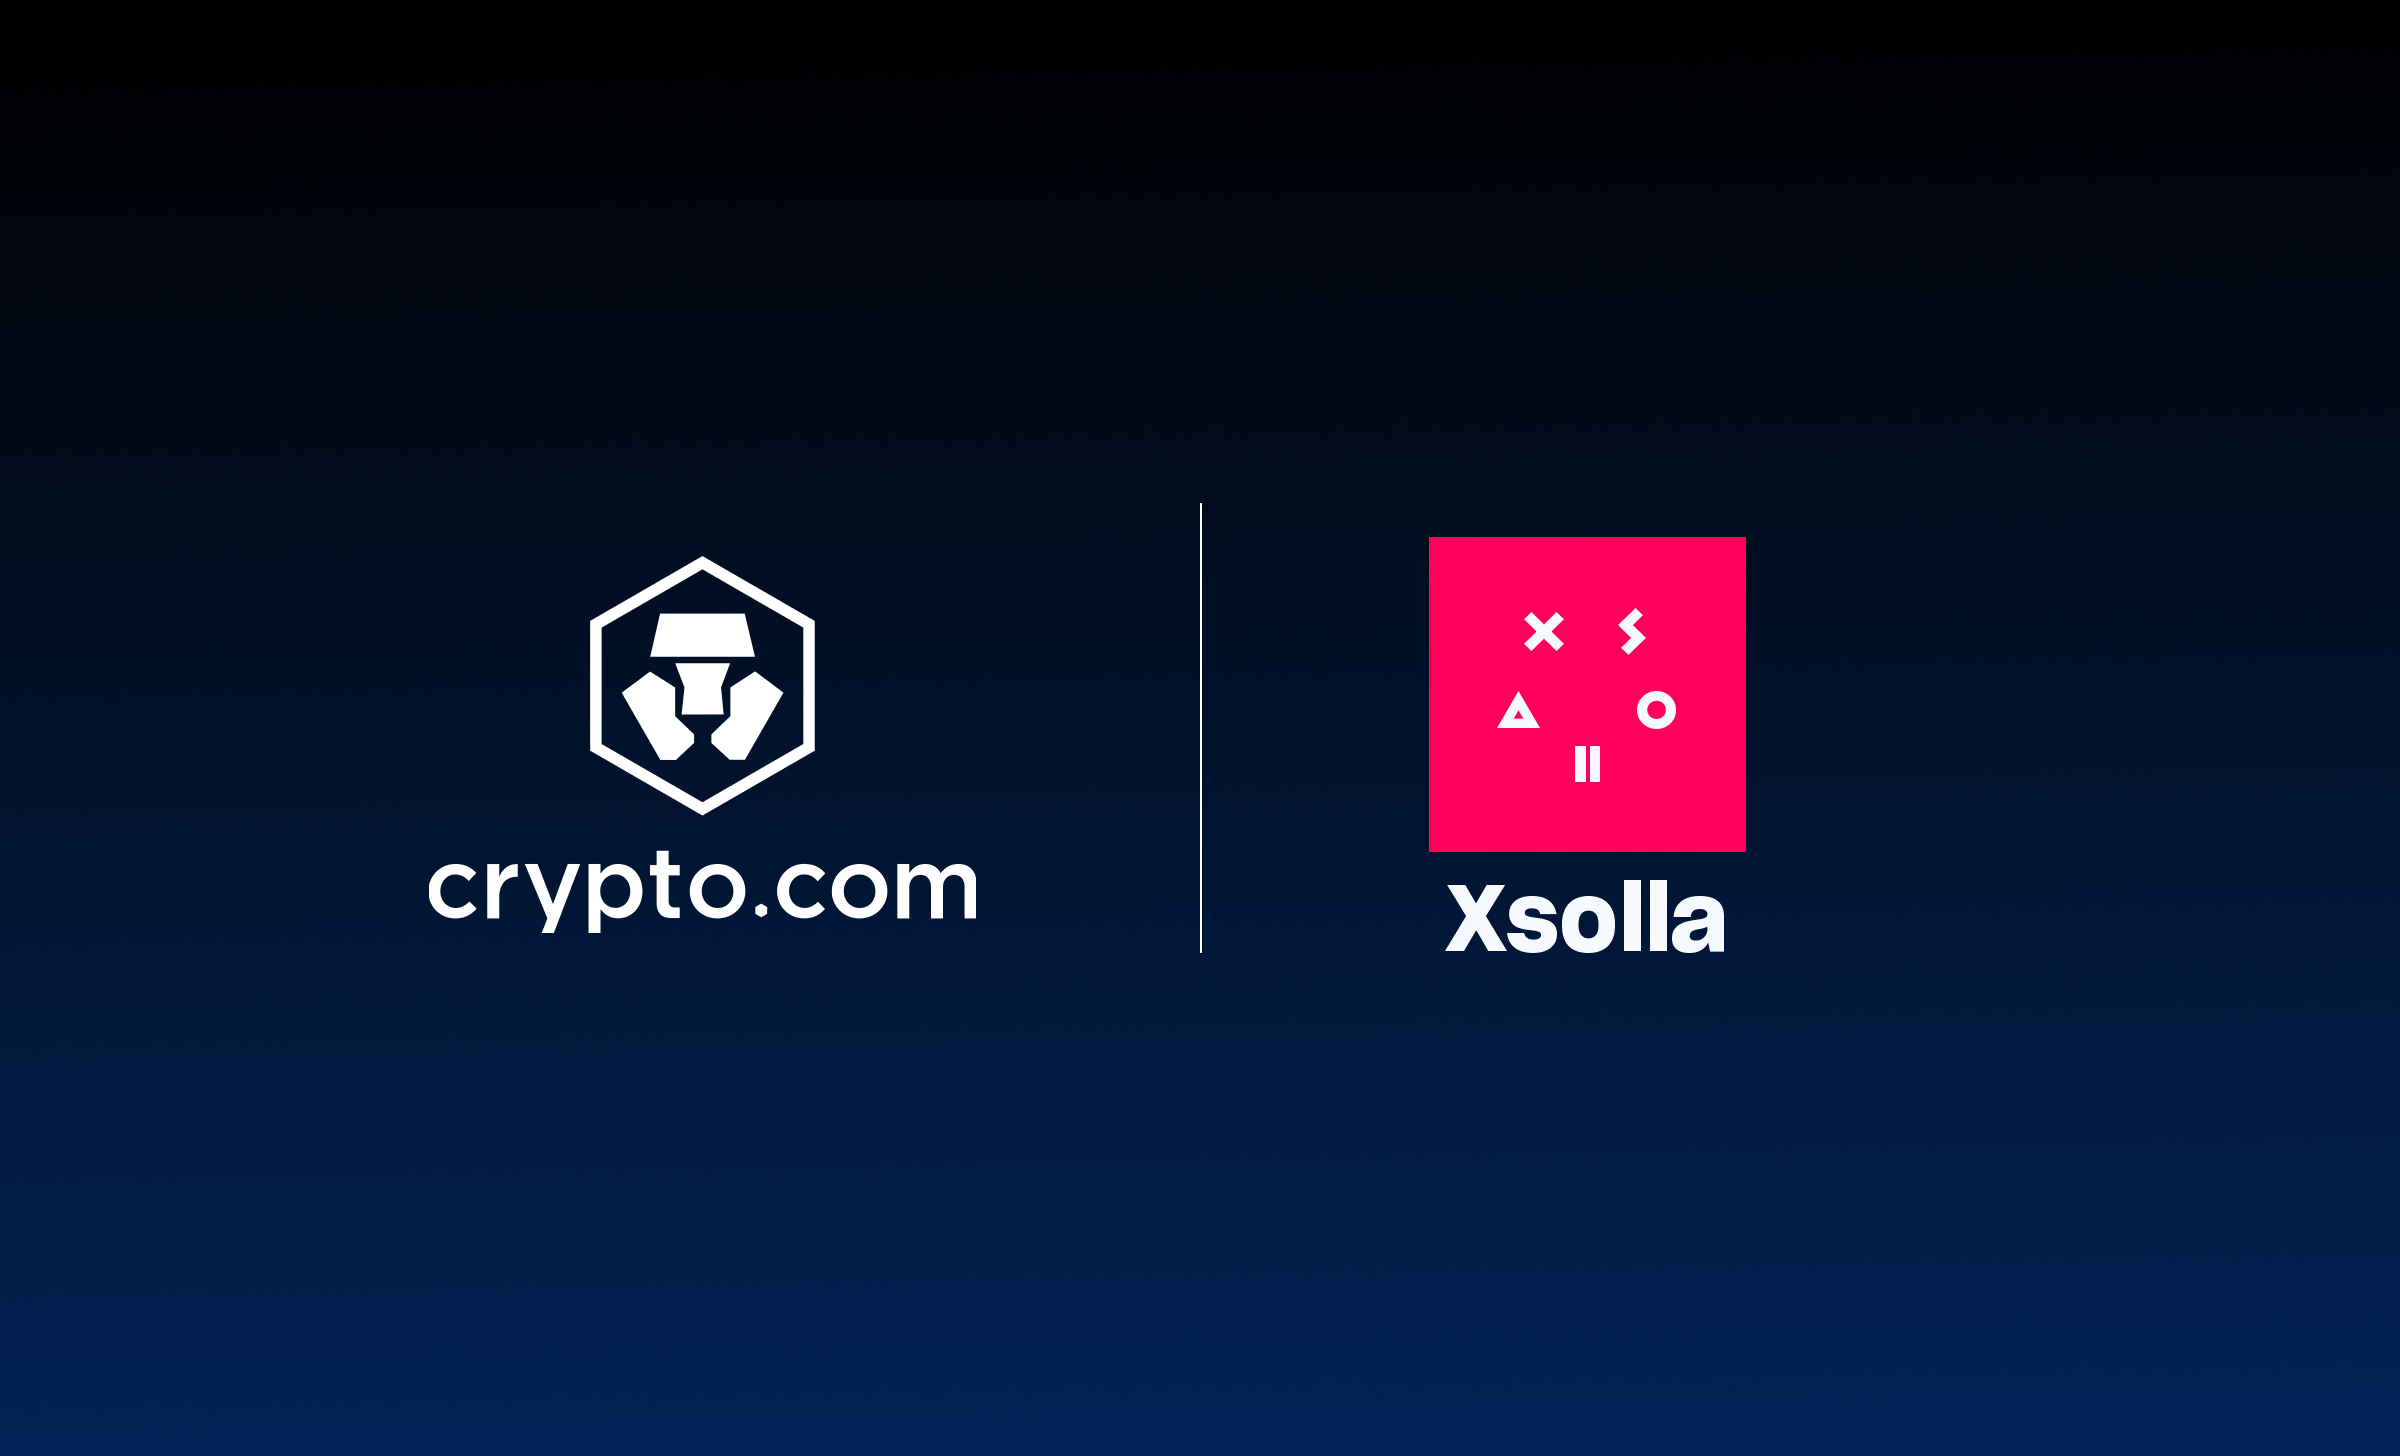 Crypto.com and Xsolla